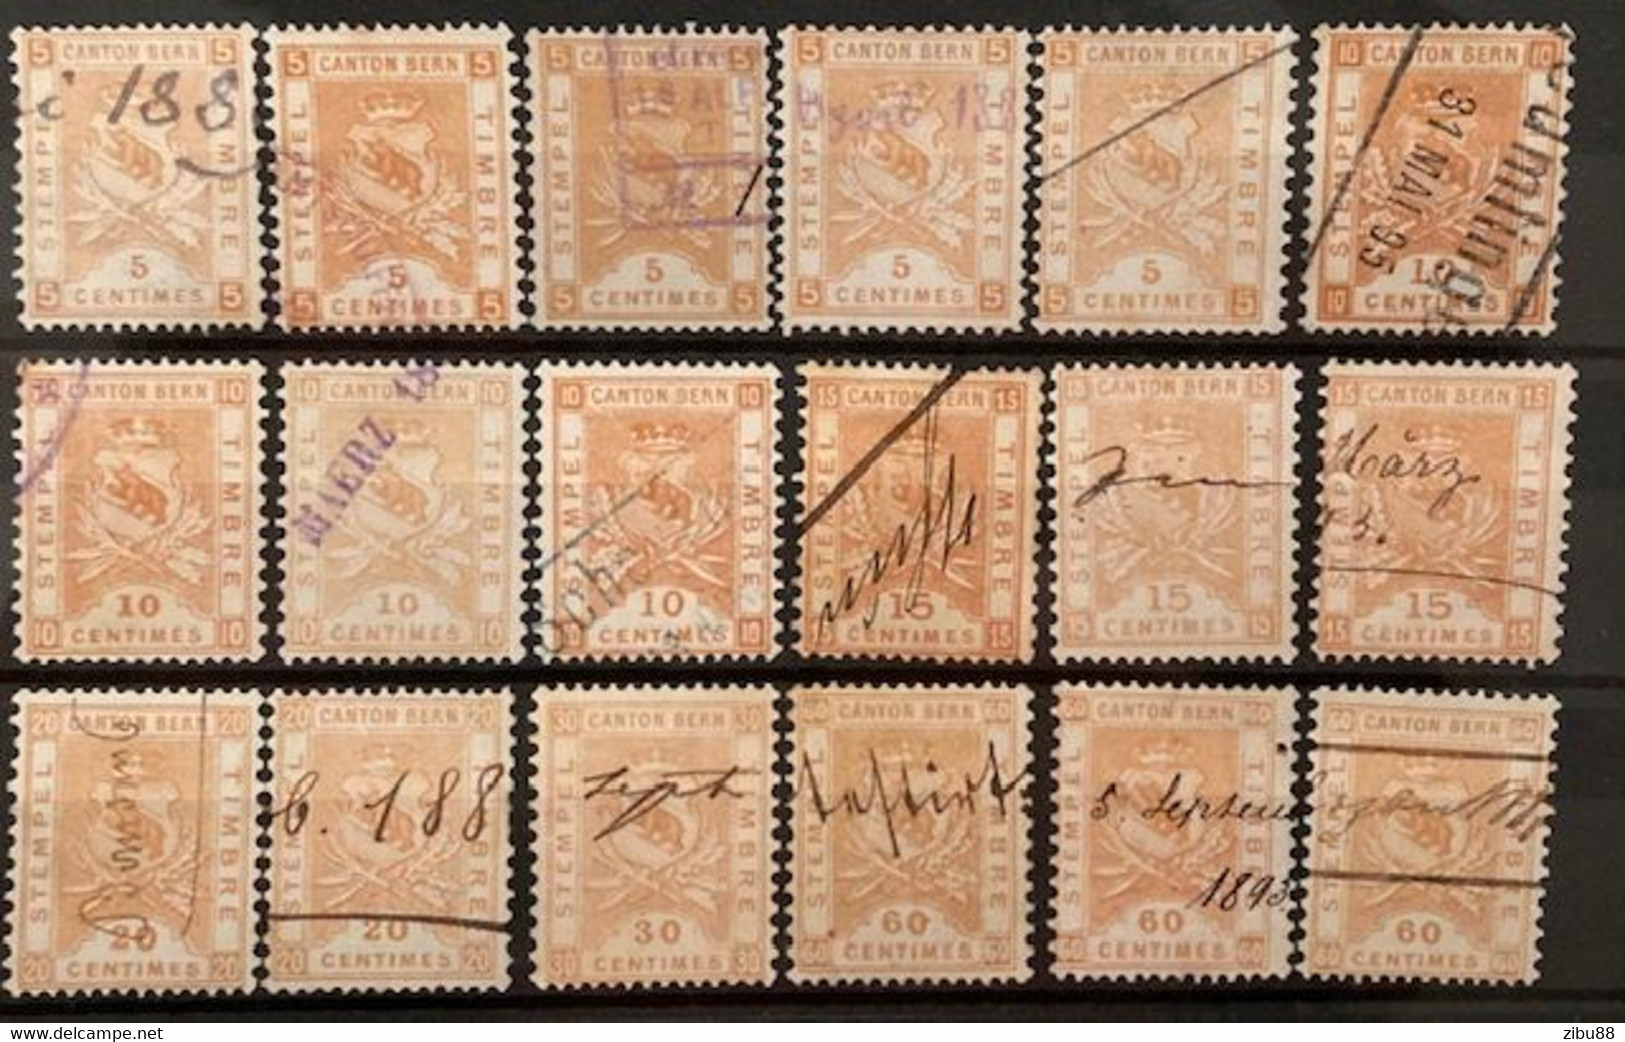 Fiskalmarken / Revenue Stamp Switzerland - Kanton Bern Steckkarte Stempelmarken, Verschiedene Werte - Steuermarken